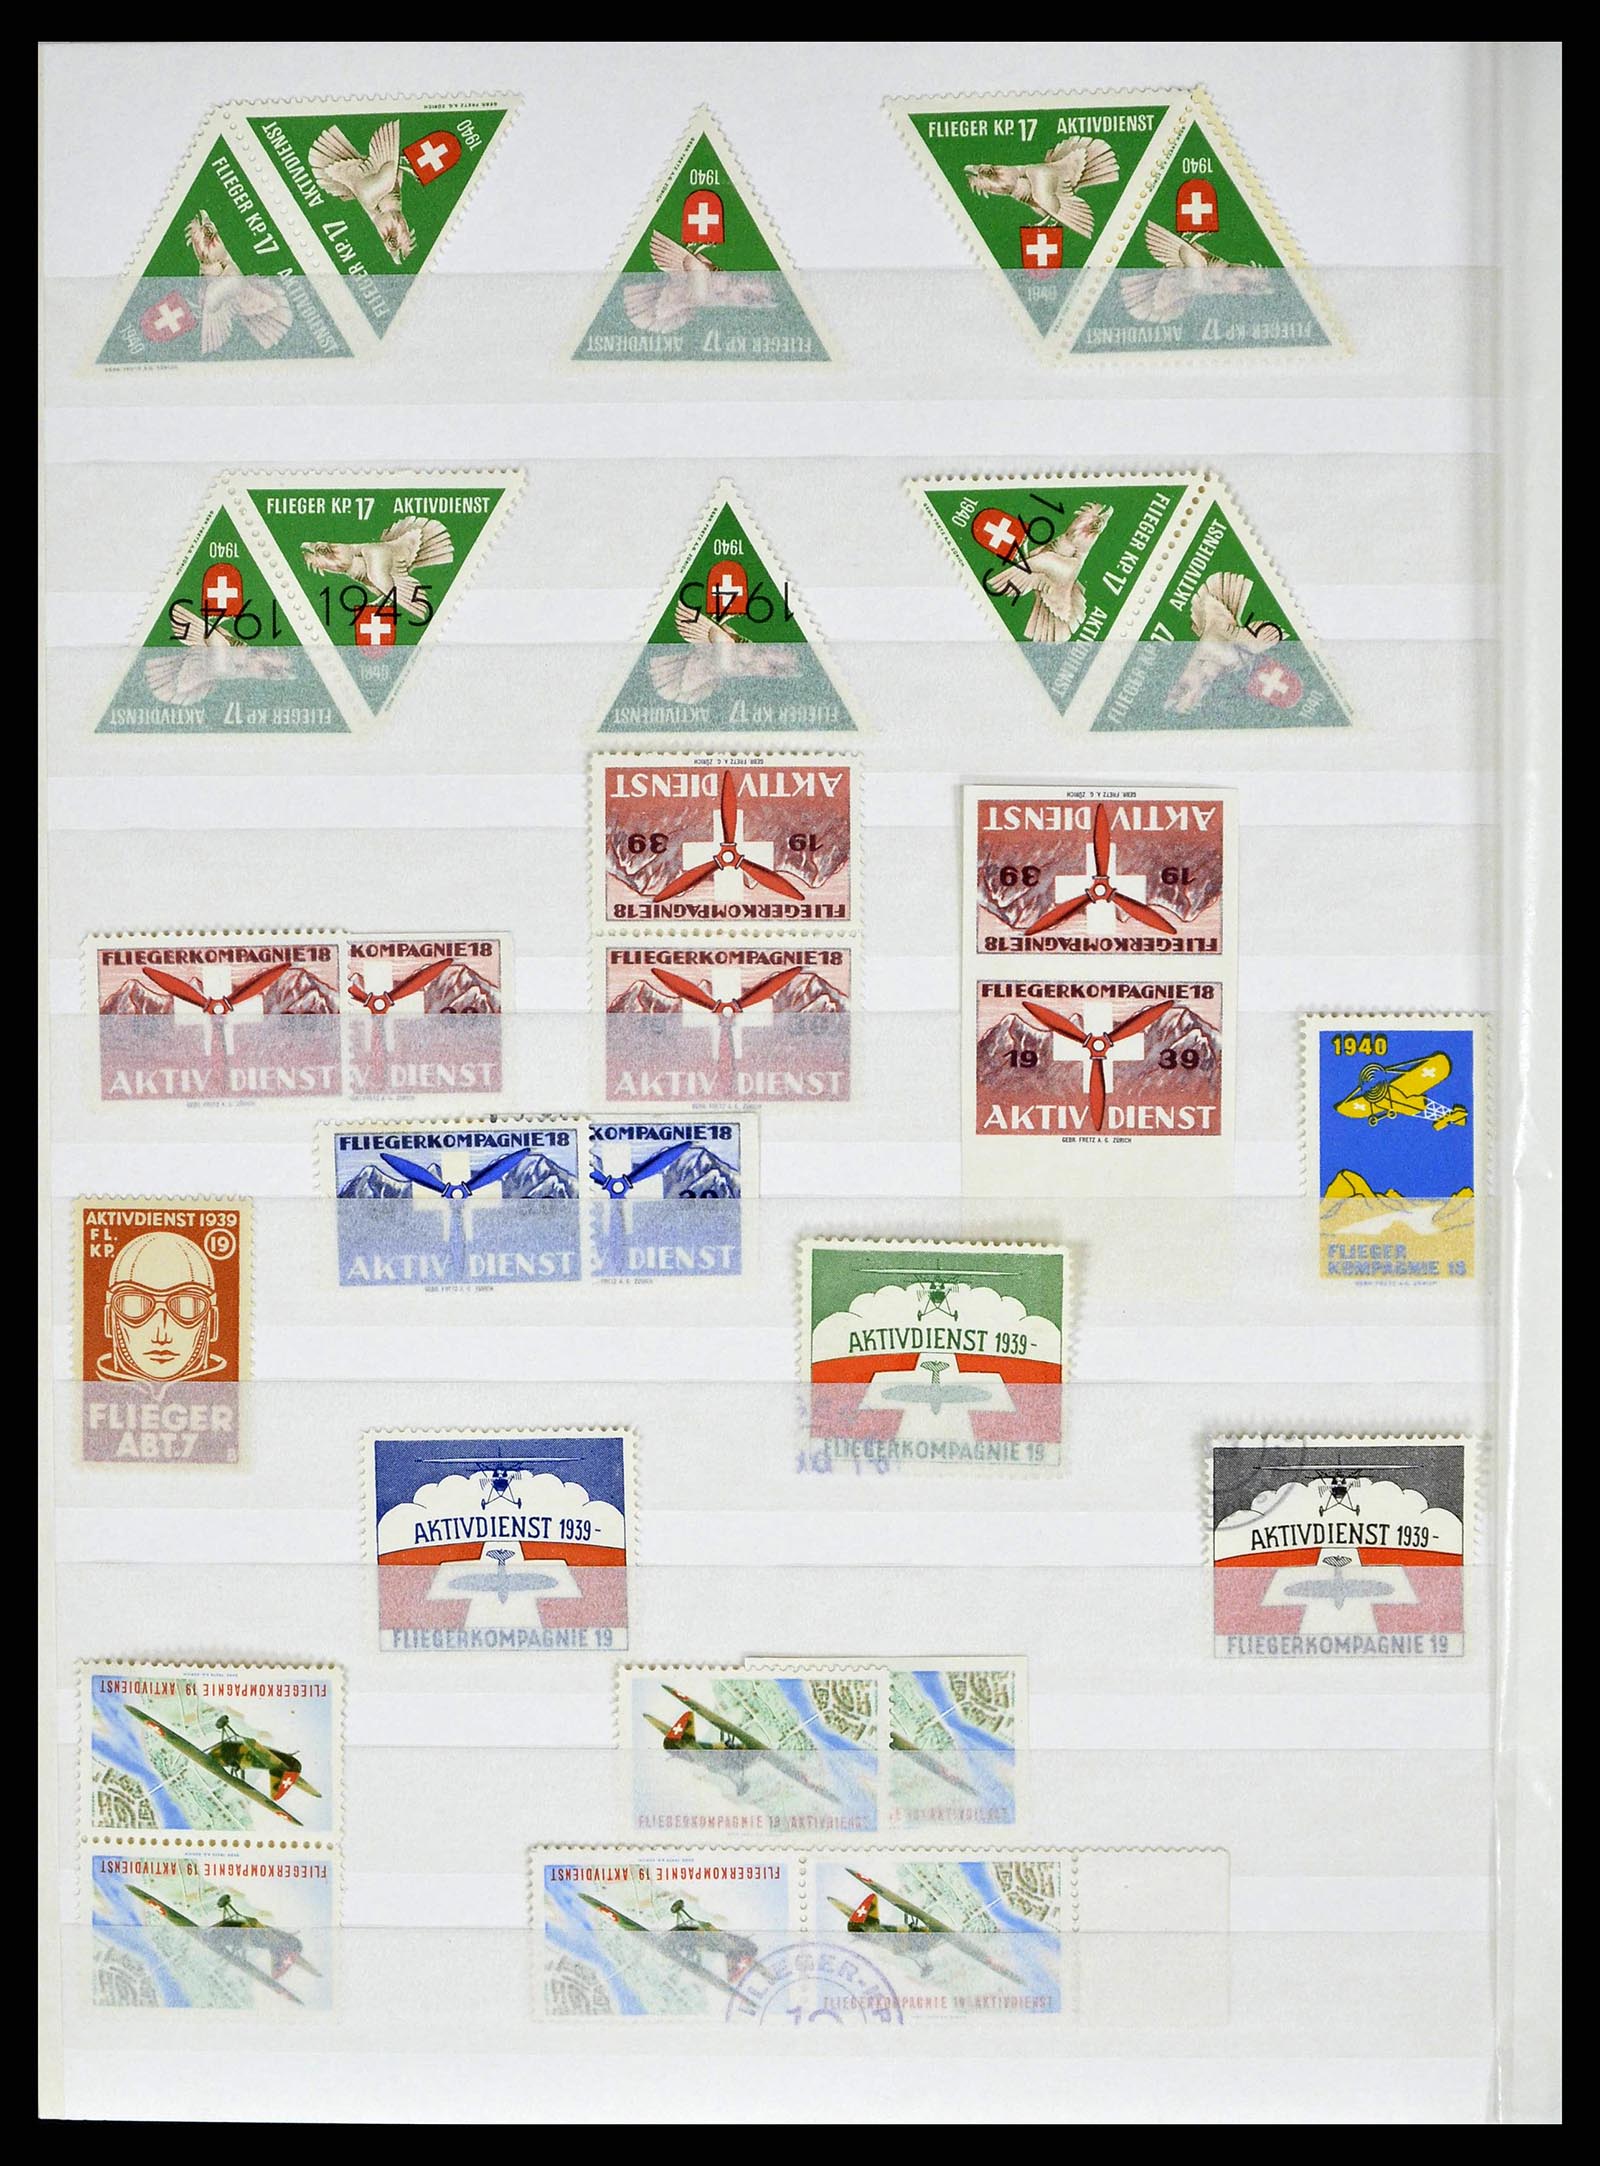 38695 0030 - Stamp collection 38695 Switzerland soldierstamps 1914-1945.